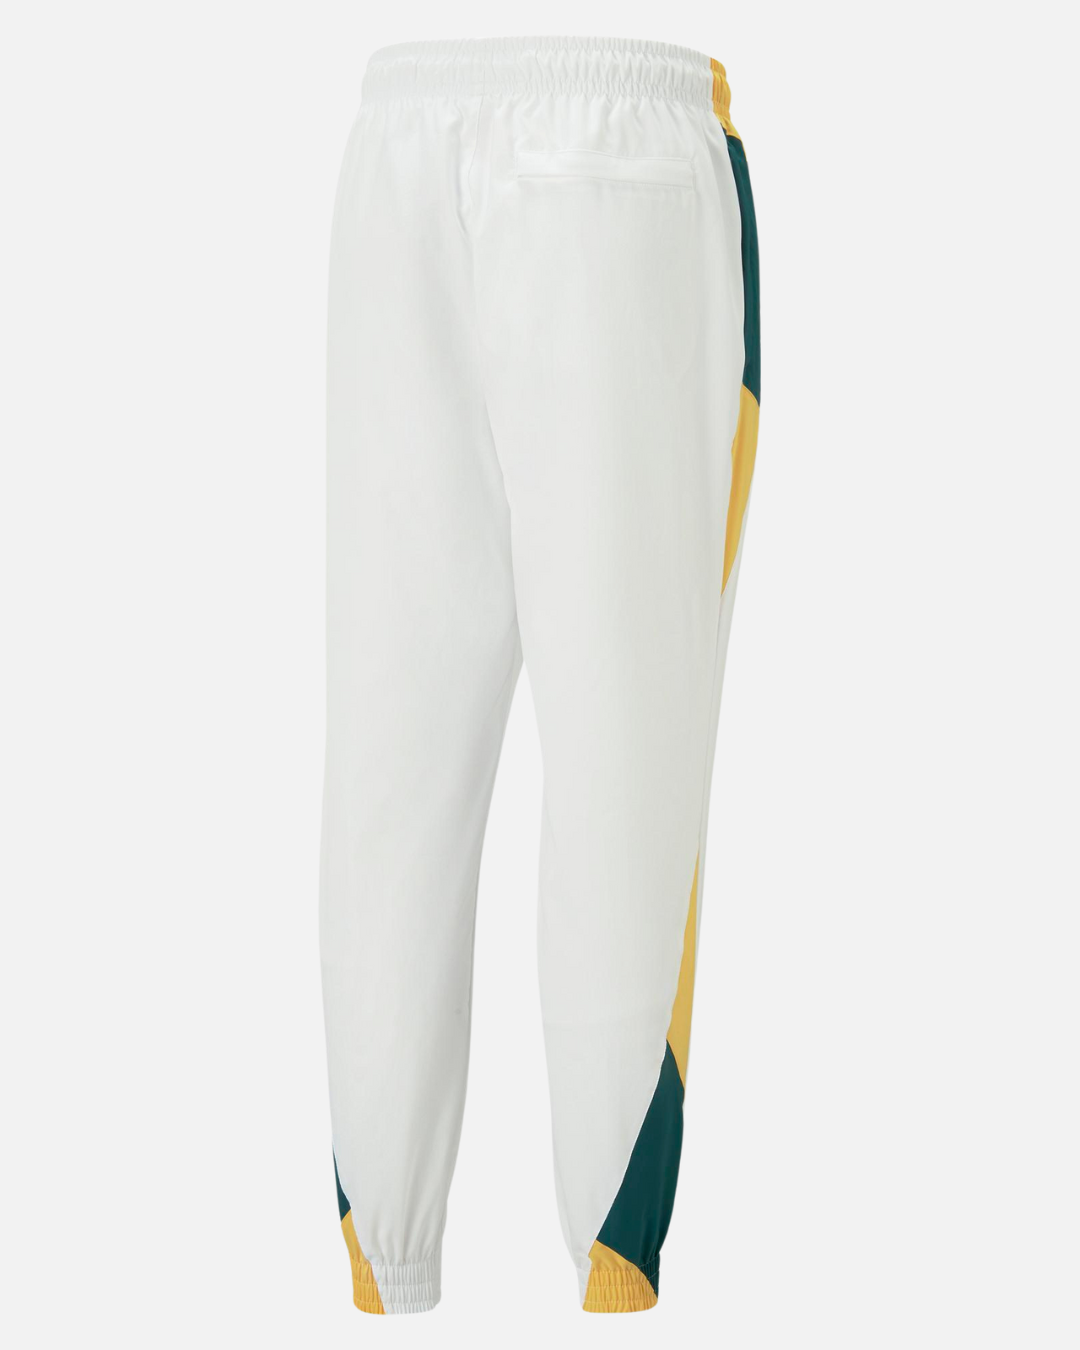 Senegal 2022/2023 Track Pants - White/Green/Yellow